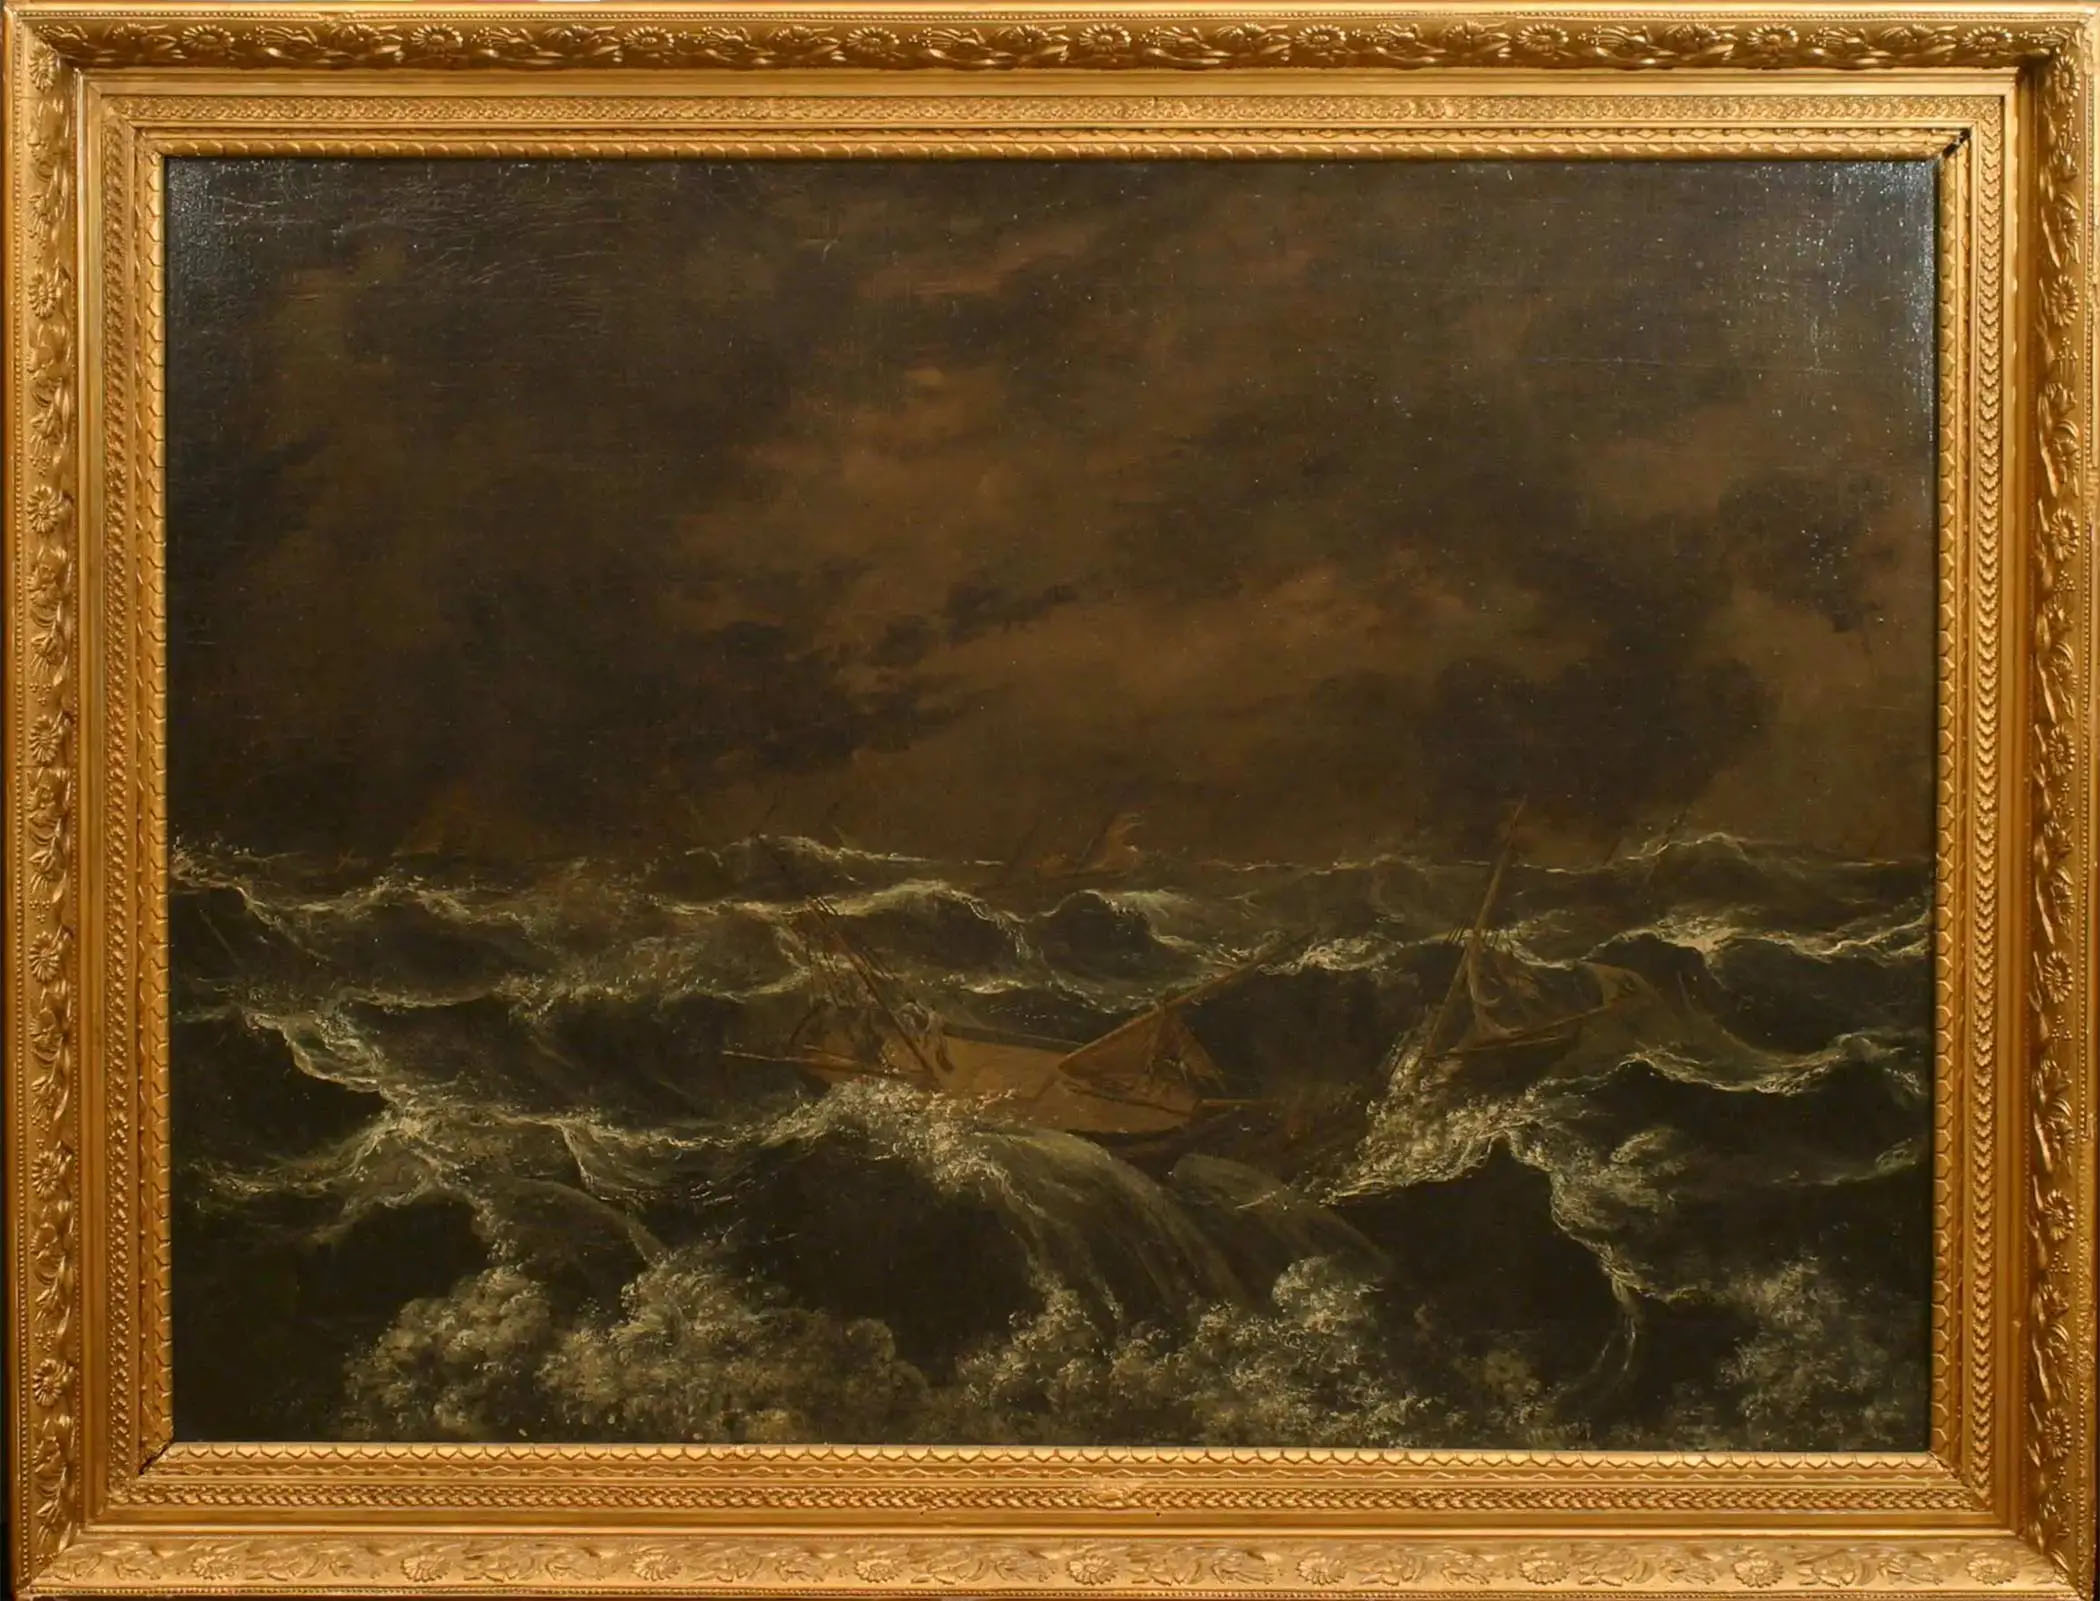 Tableau dramatique illustrant une mer en furie et un navire en train de faire naufrage, dans un cadre doré